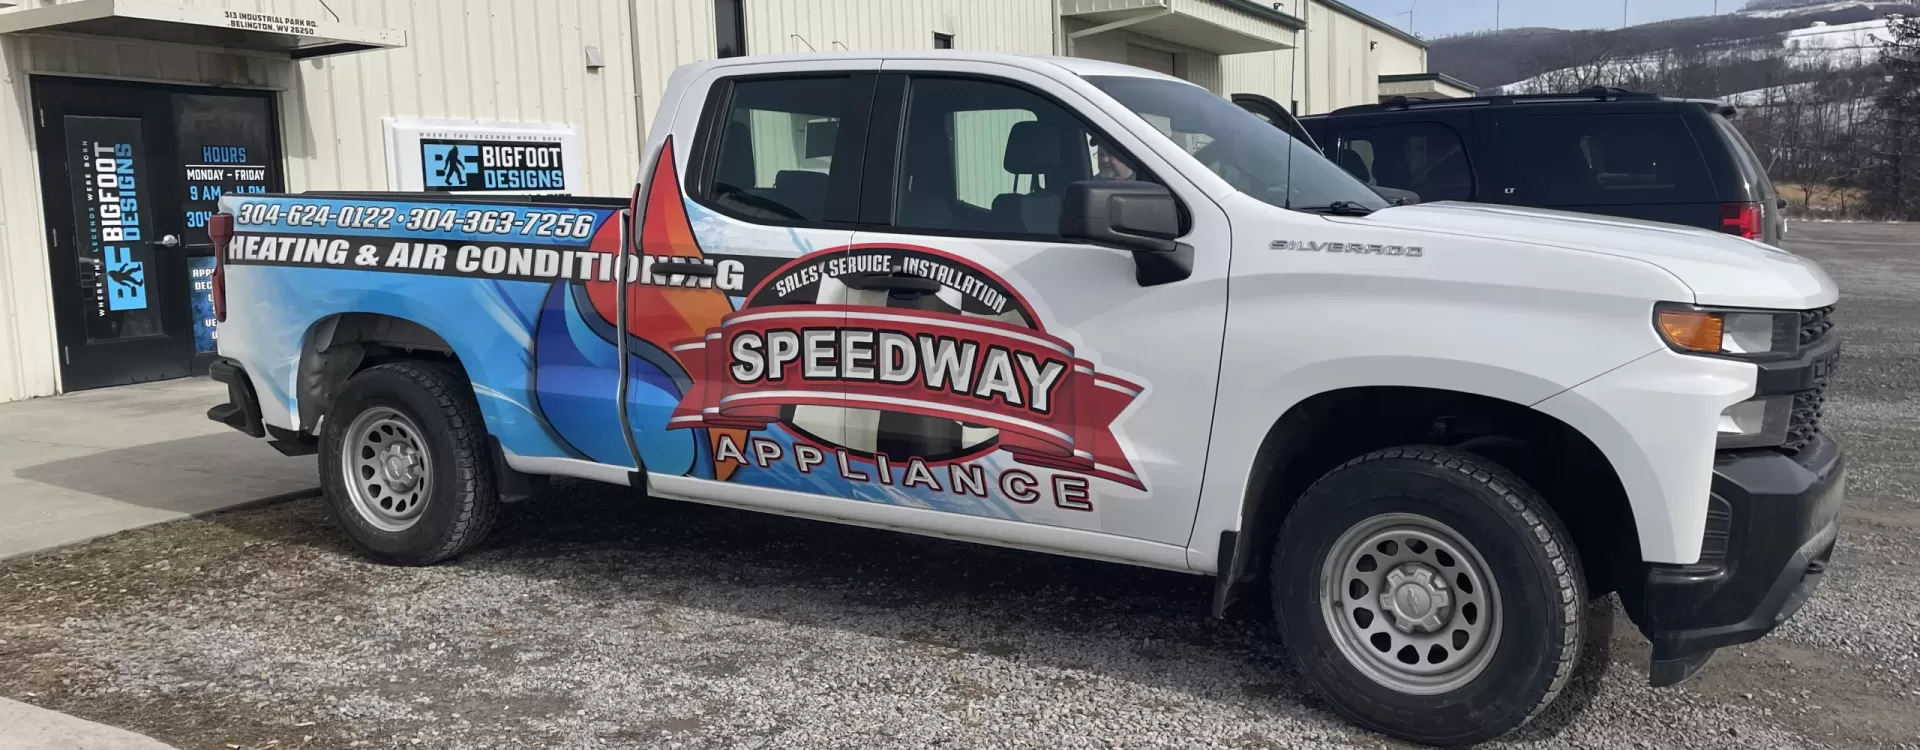 Speedway Appliances Truck Halfwrap